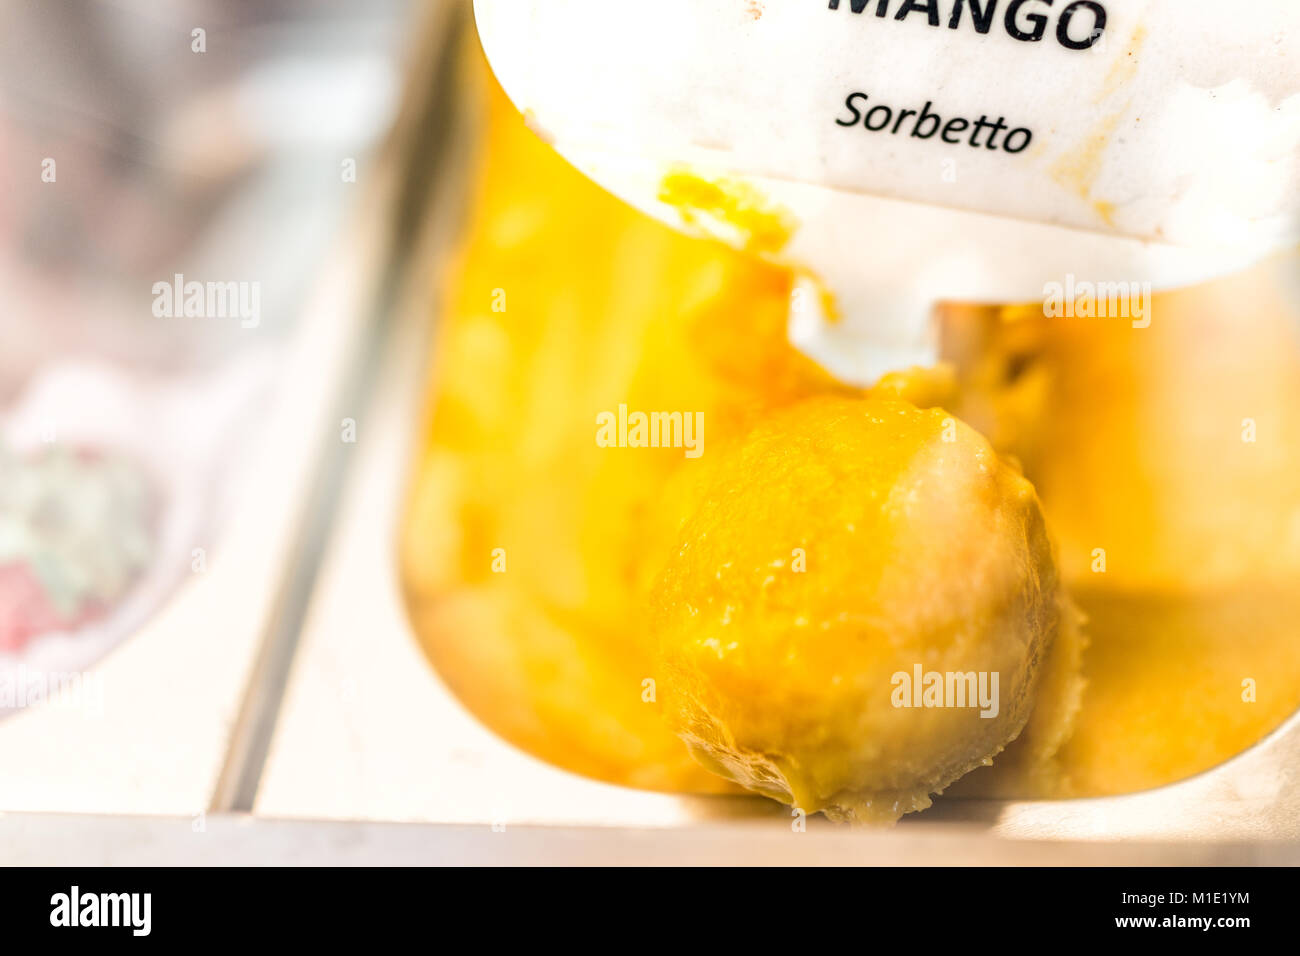 Gros plan macro de saveur mangue sorbet orange jaune crème glacée à signer sur l'affichage en magasin cafe shop avec écope en Italie, l'Italien sorbetto Banque D'Images